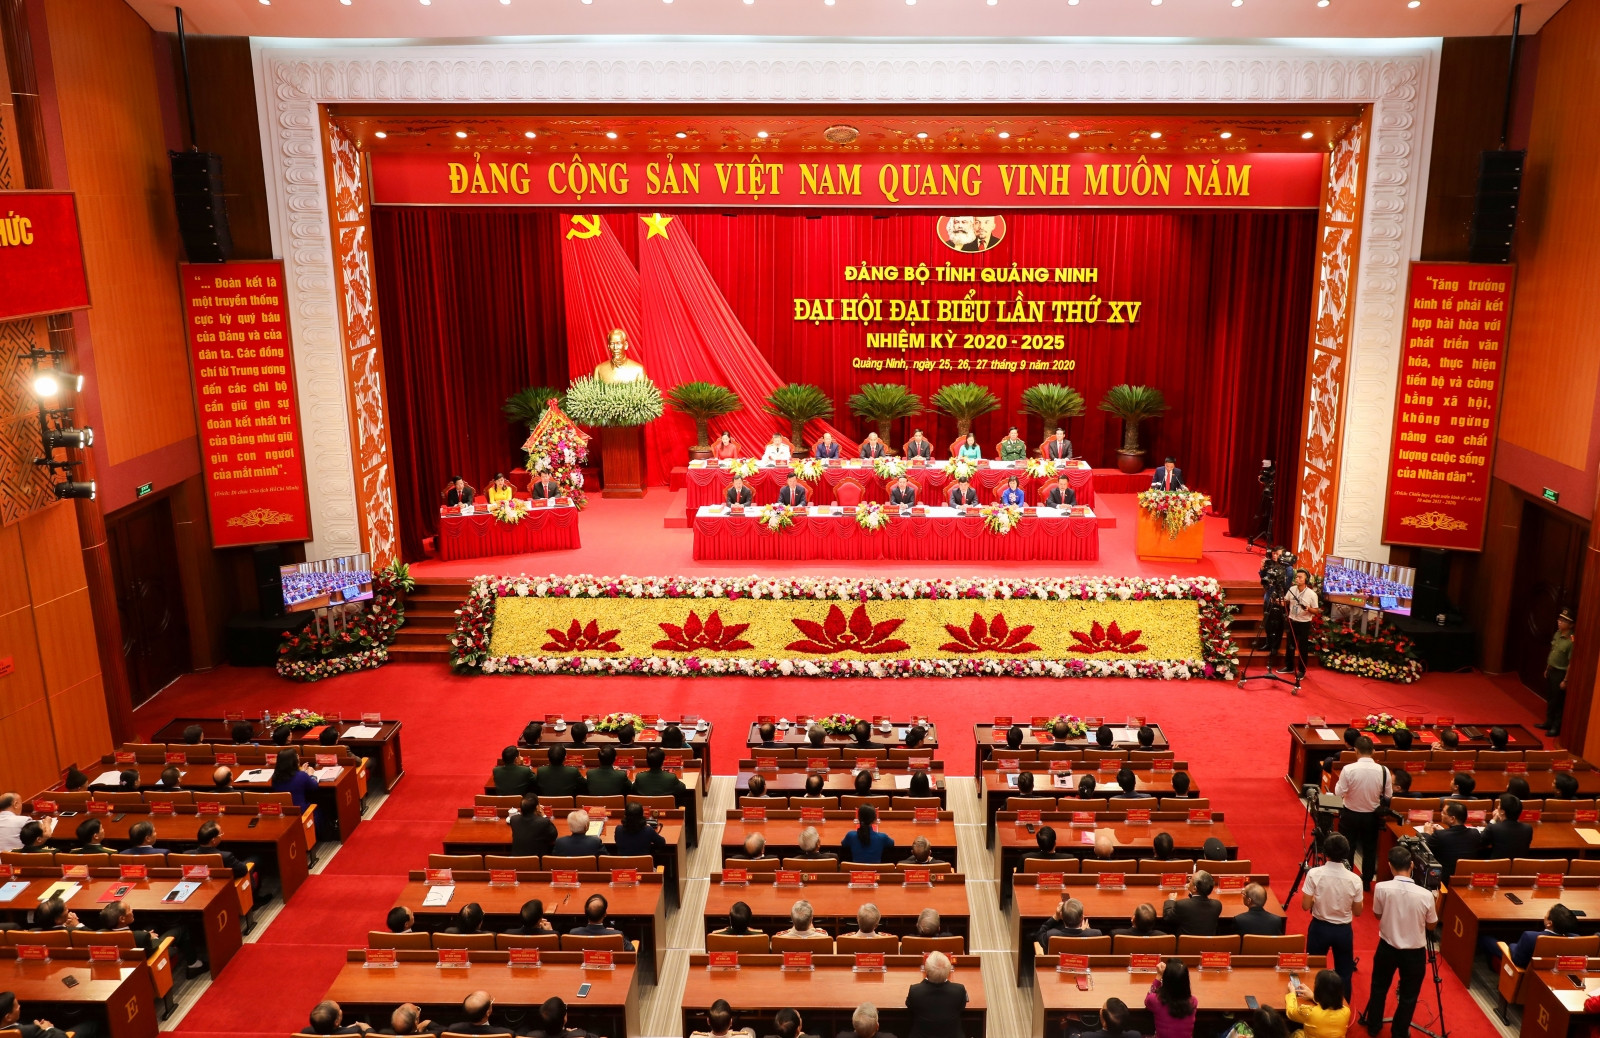 Chủ tịch Quốc hội: Quảng Ninh bảo đảm vững chắc quốc phòng an ninh, giữ vững chủ quyền biên giới quốc gia